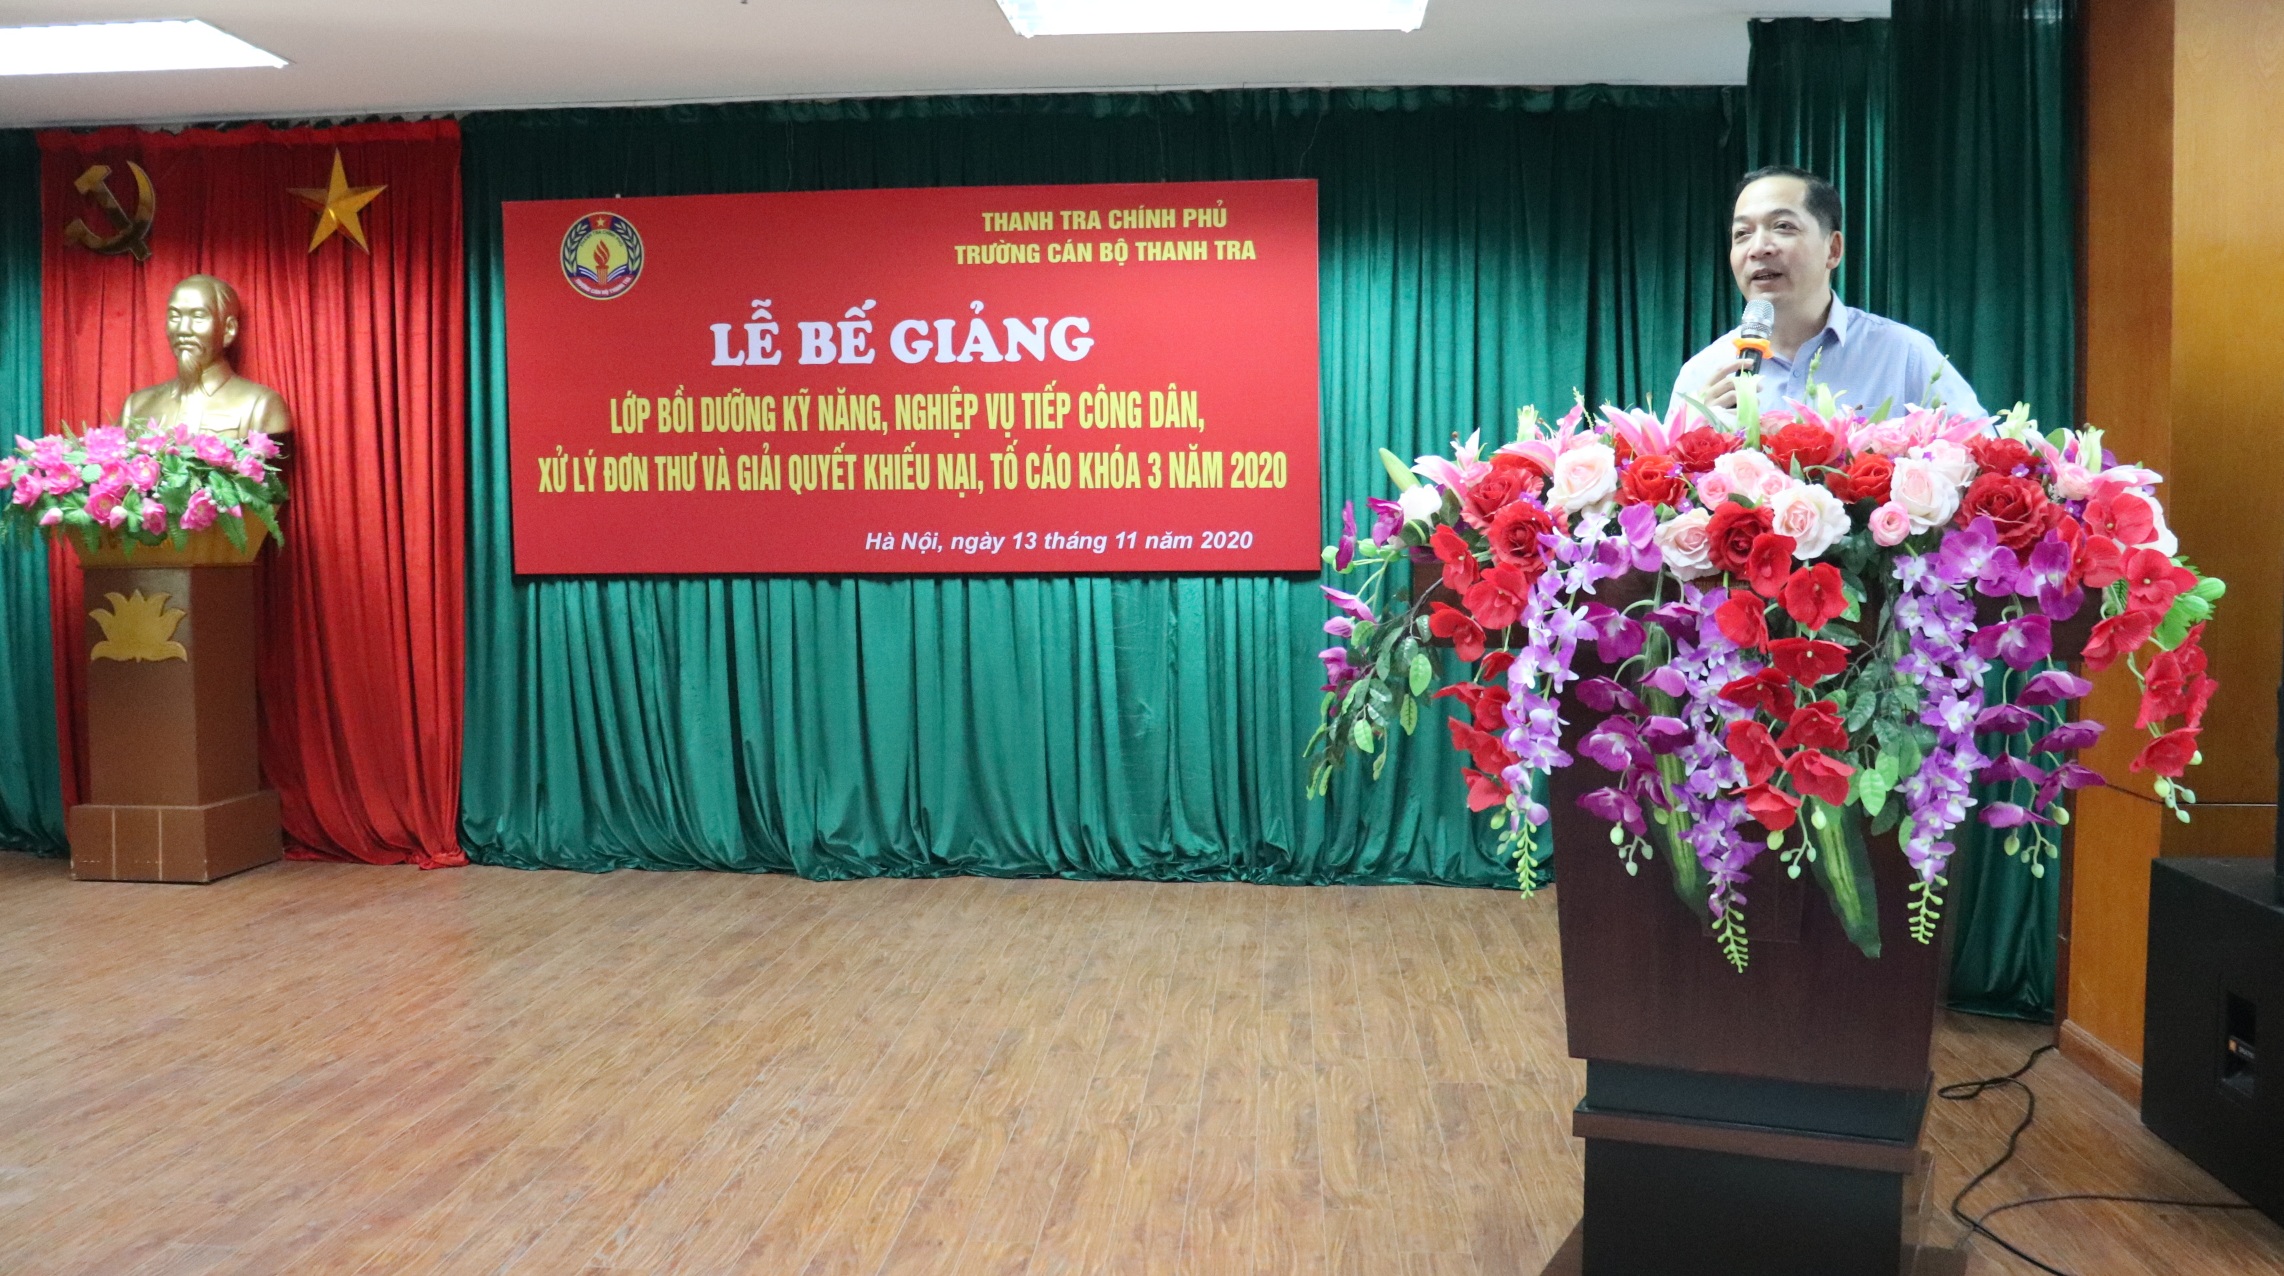 TS Nguyễn Huy Hoàng TTVCC Phó Hiệu trưởng trg CBTT phát biểu bế giảng khóa học